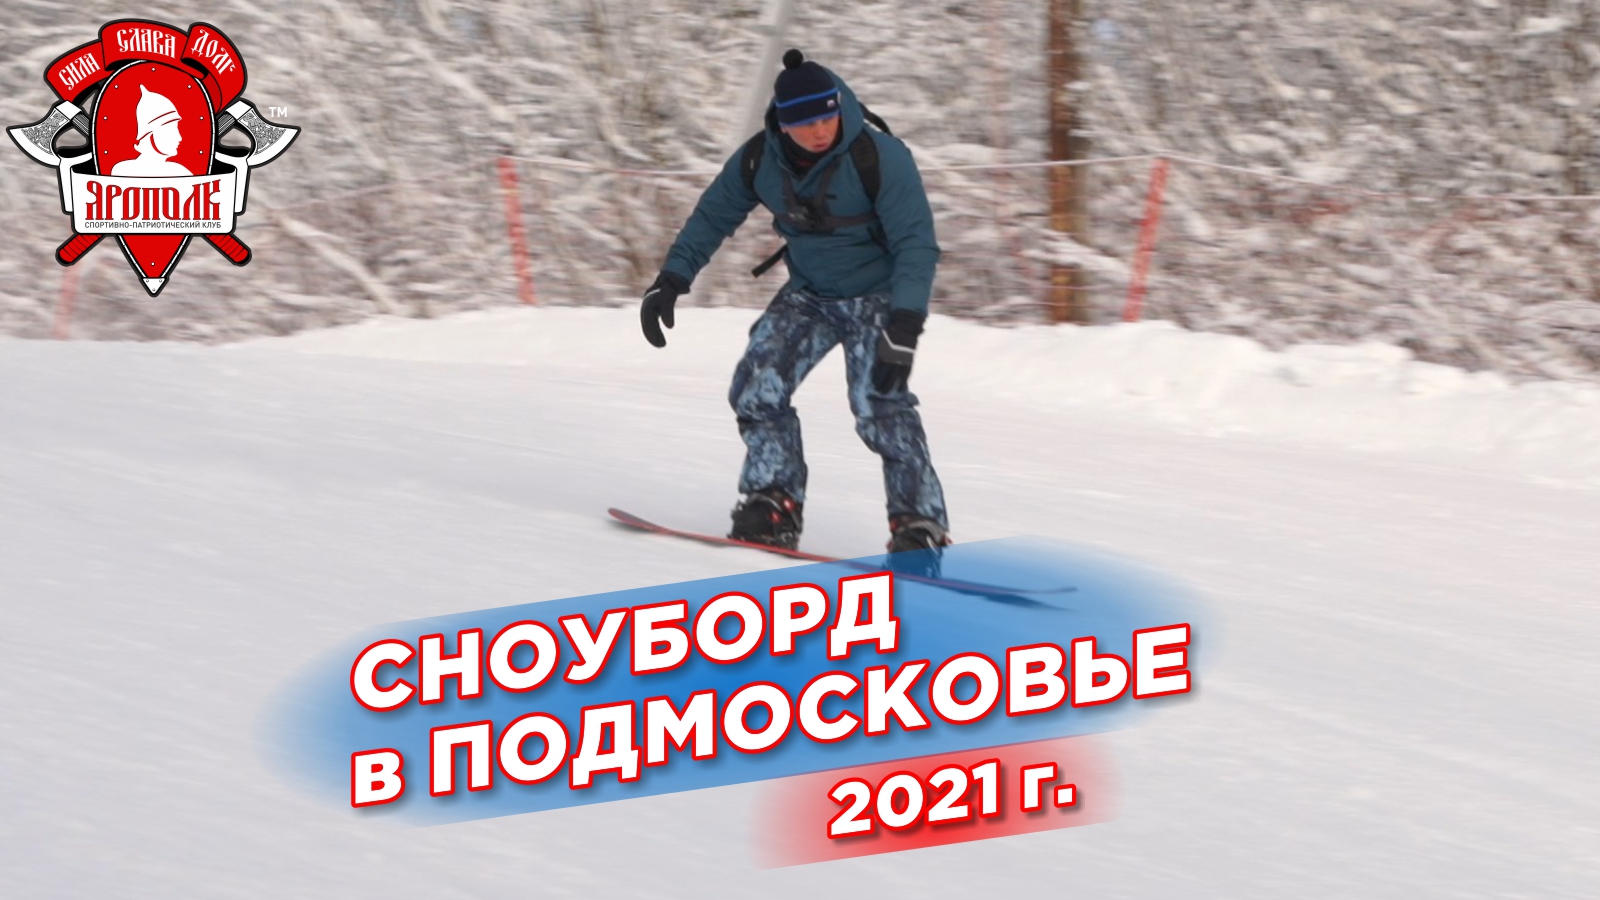 Сноуборд притягивает ещё больше, экстрим, Шадриков Илья, зимние виды спорта, 12.01.2021